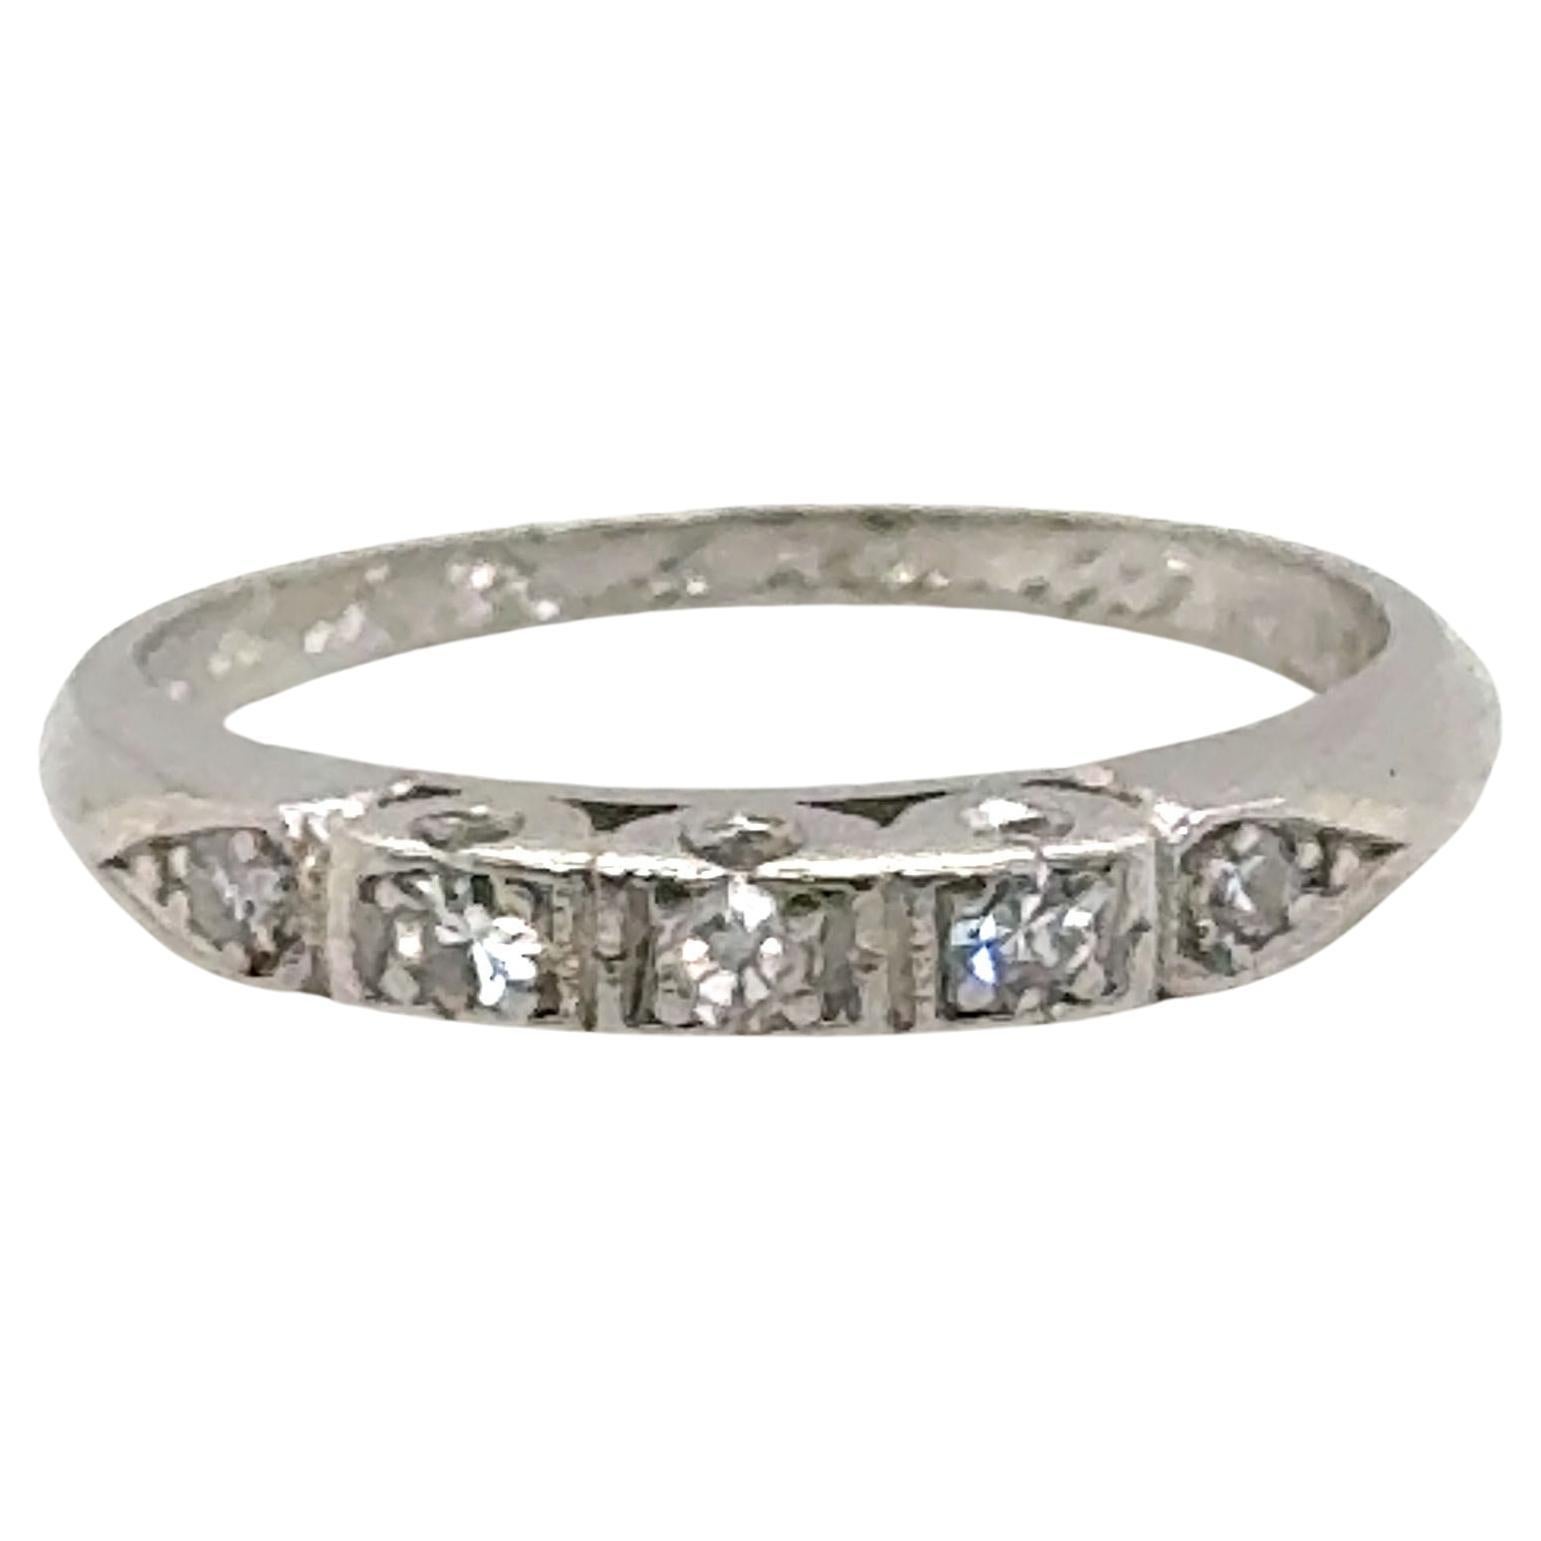  Diamond Wedding Band Genuine Antique Deco Dated 4-24-49 Platinum Ring